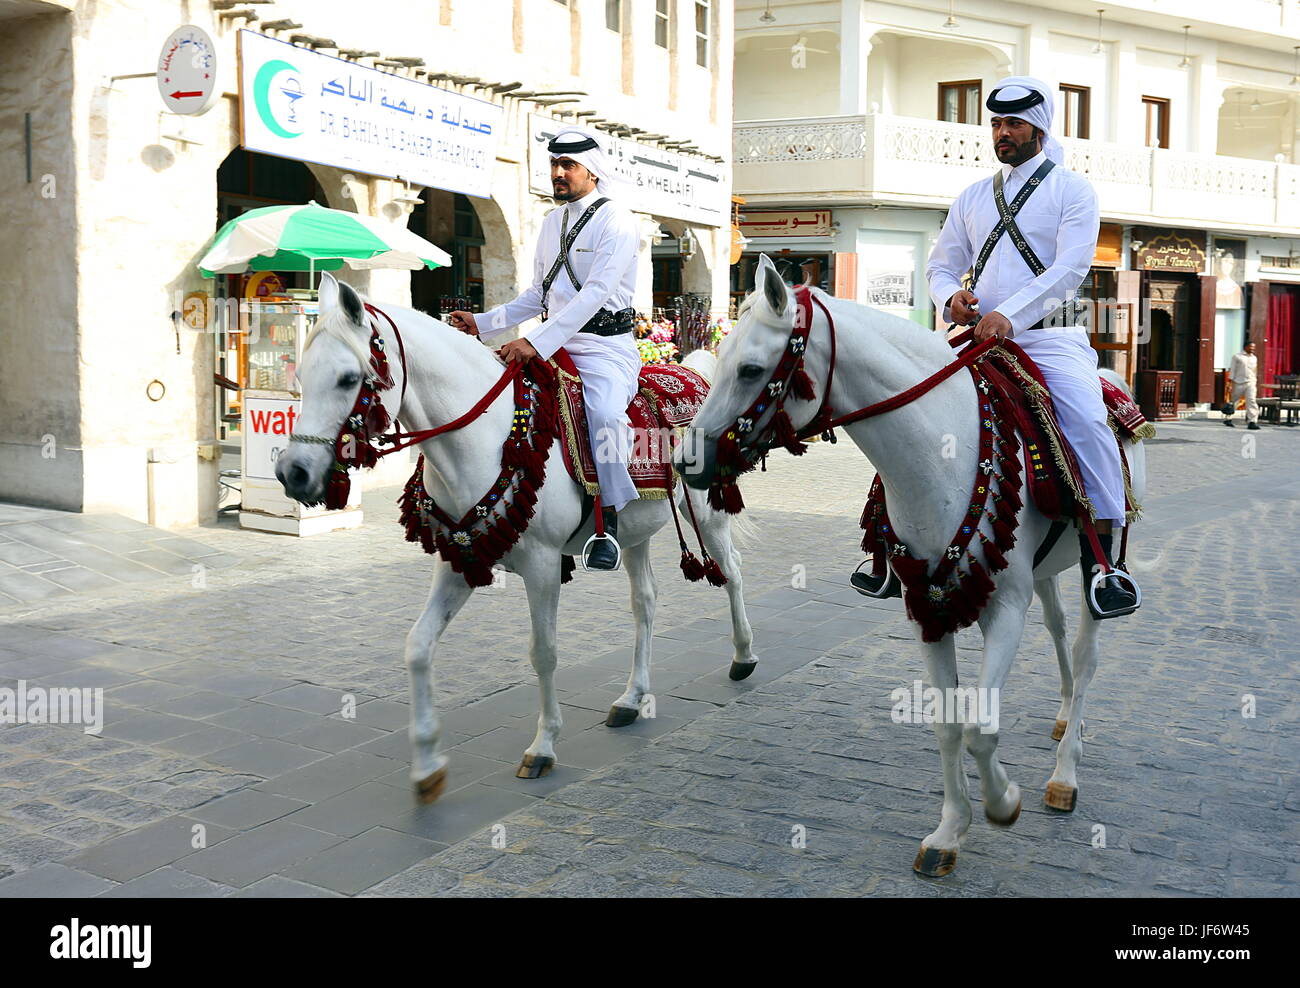 DOHA, QATAR - 9 avril 2017 : la patrouille de la police montée Souq Waqif marché dans le centre de Doha principalement comme un spectacle culturel pour les touristes Banque D'Images